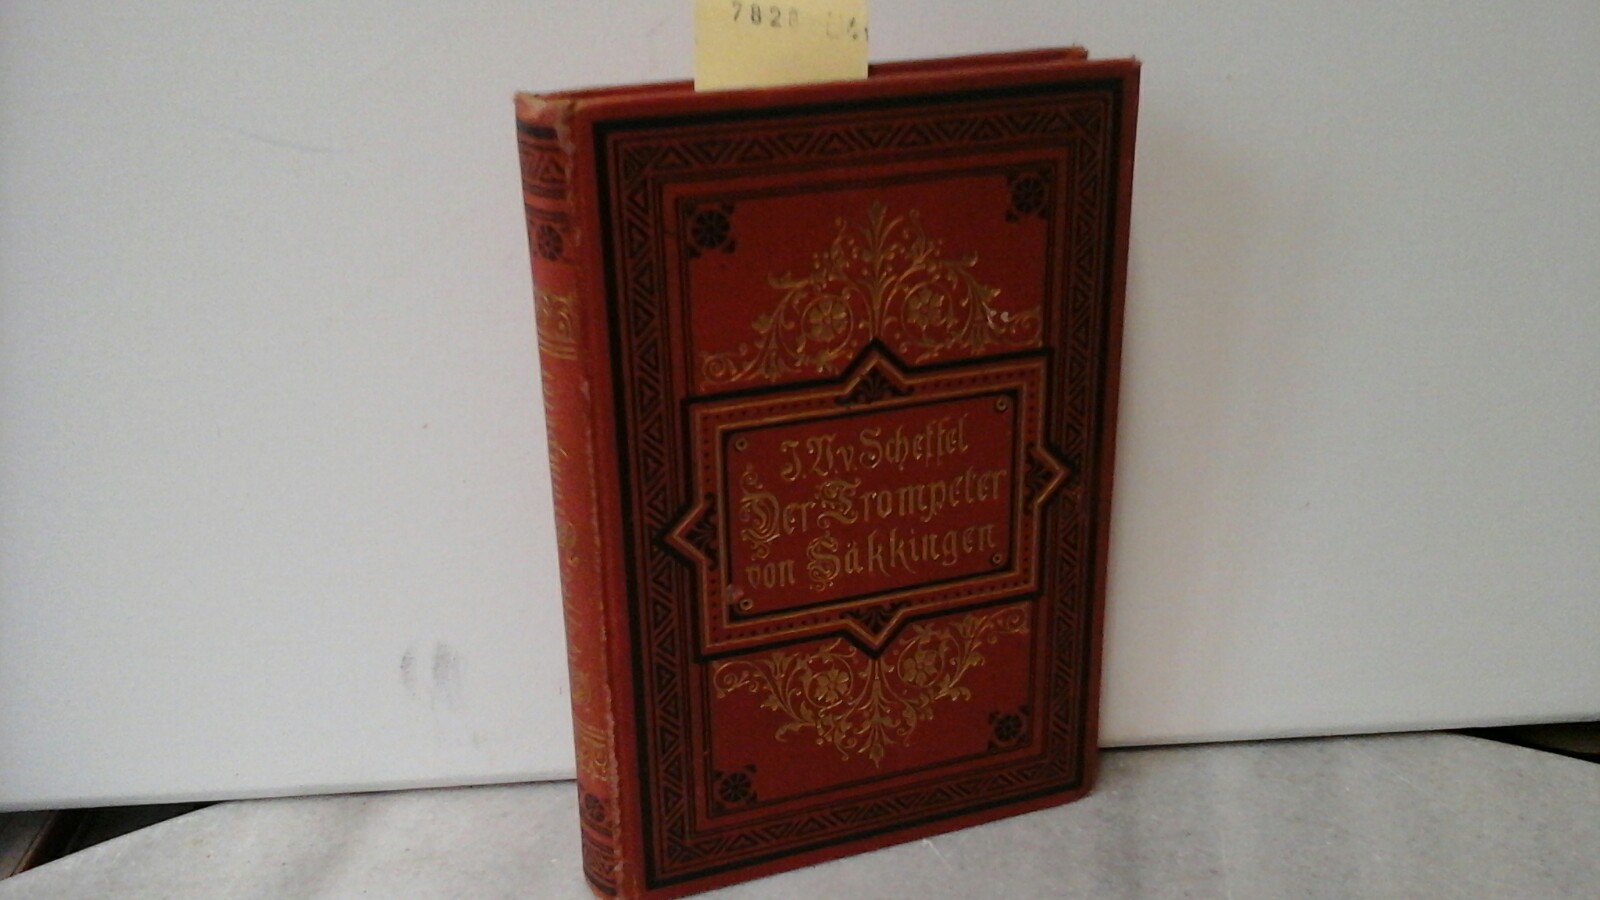 RHEIN. - SCHEFFEL, JOSEPH V.v.: Der Trompeter von Skkingen. Ein Sang vom Oberrhein. Hunderteinunddreiigste /131./ Auflage.